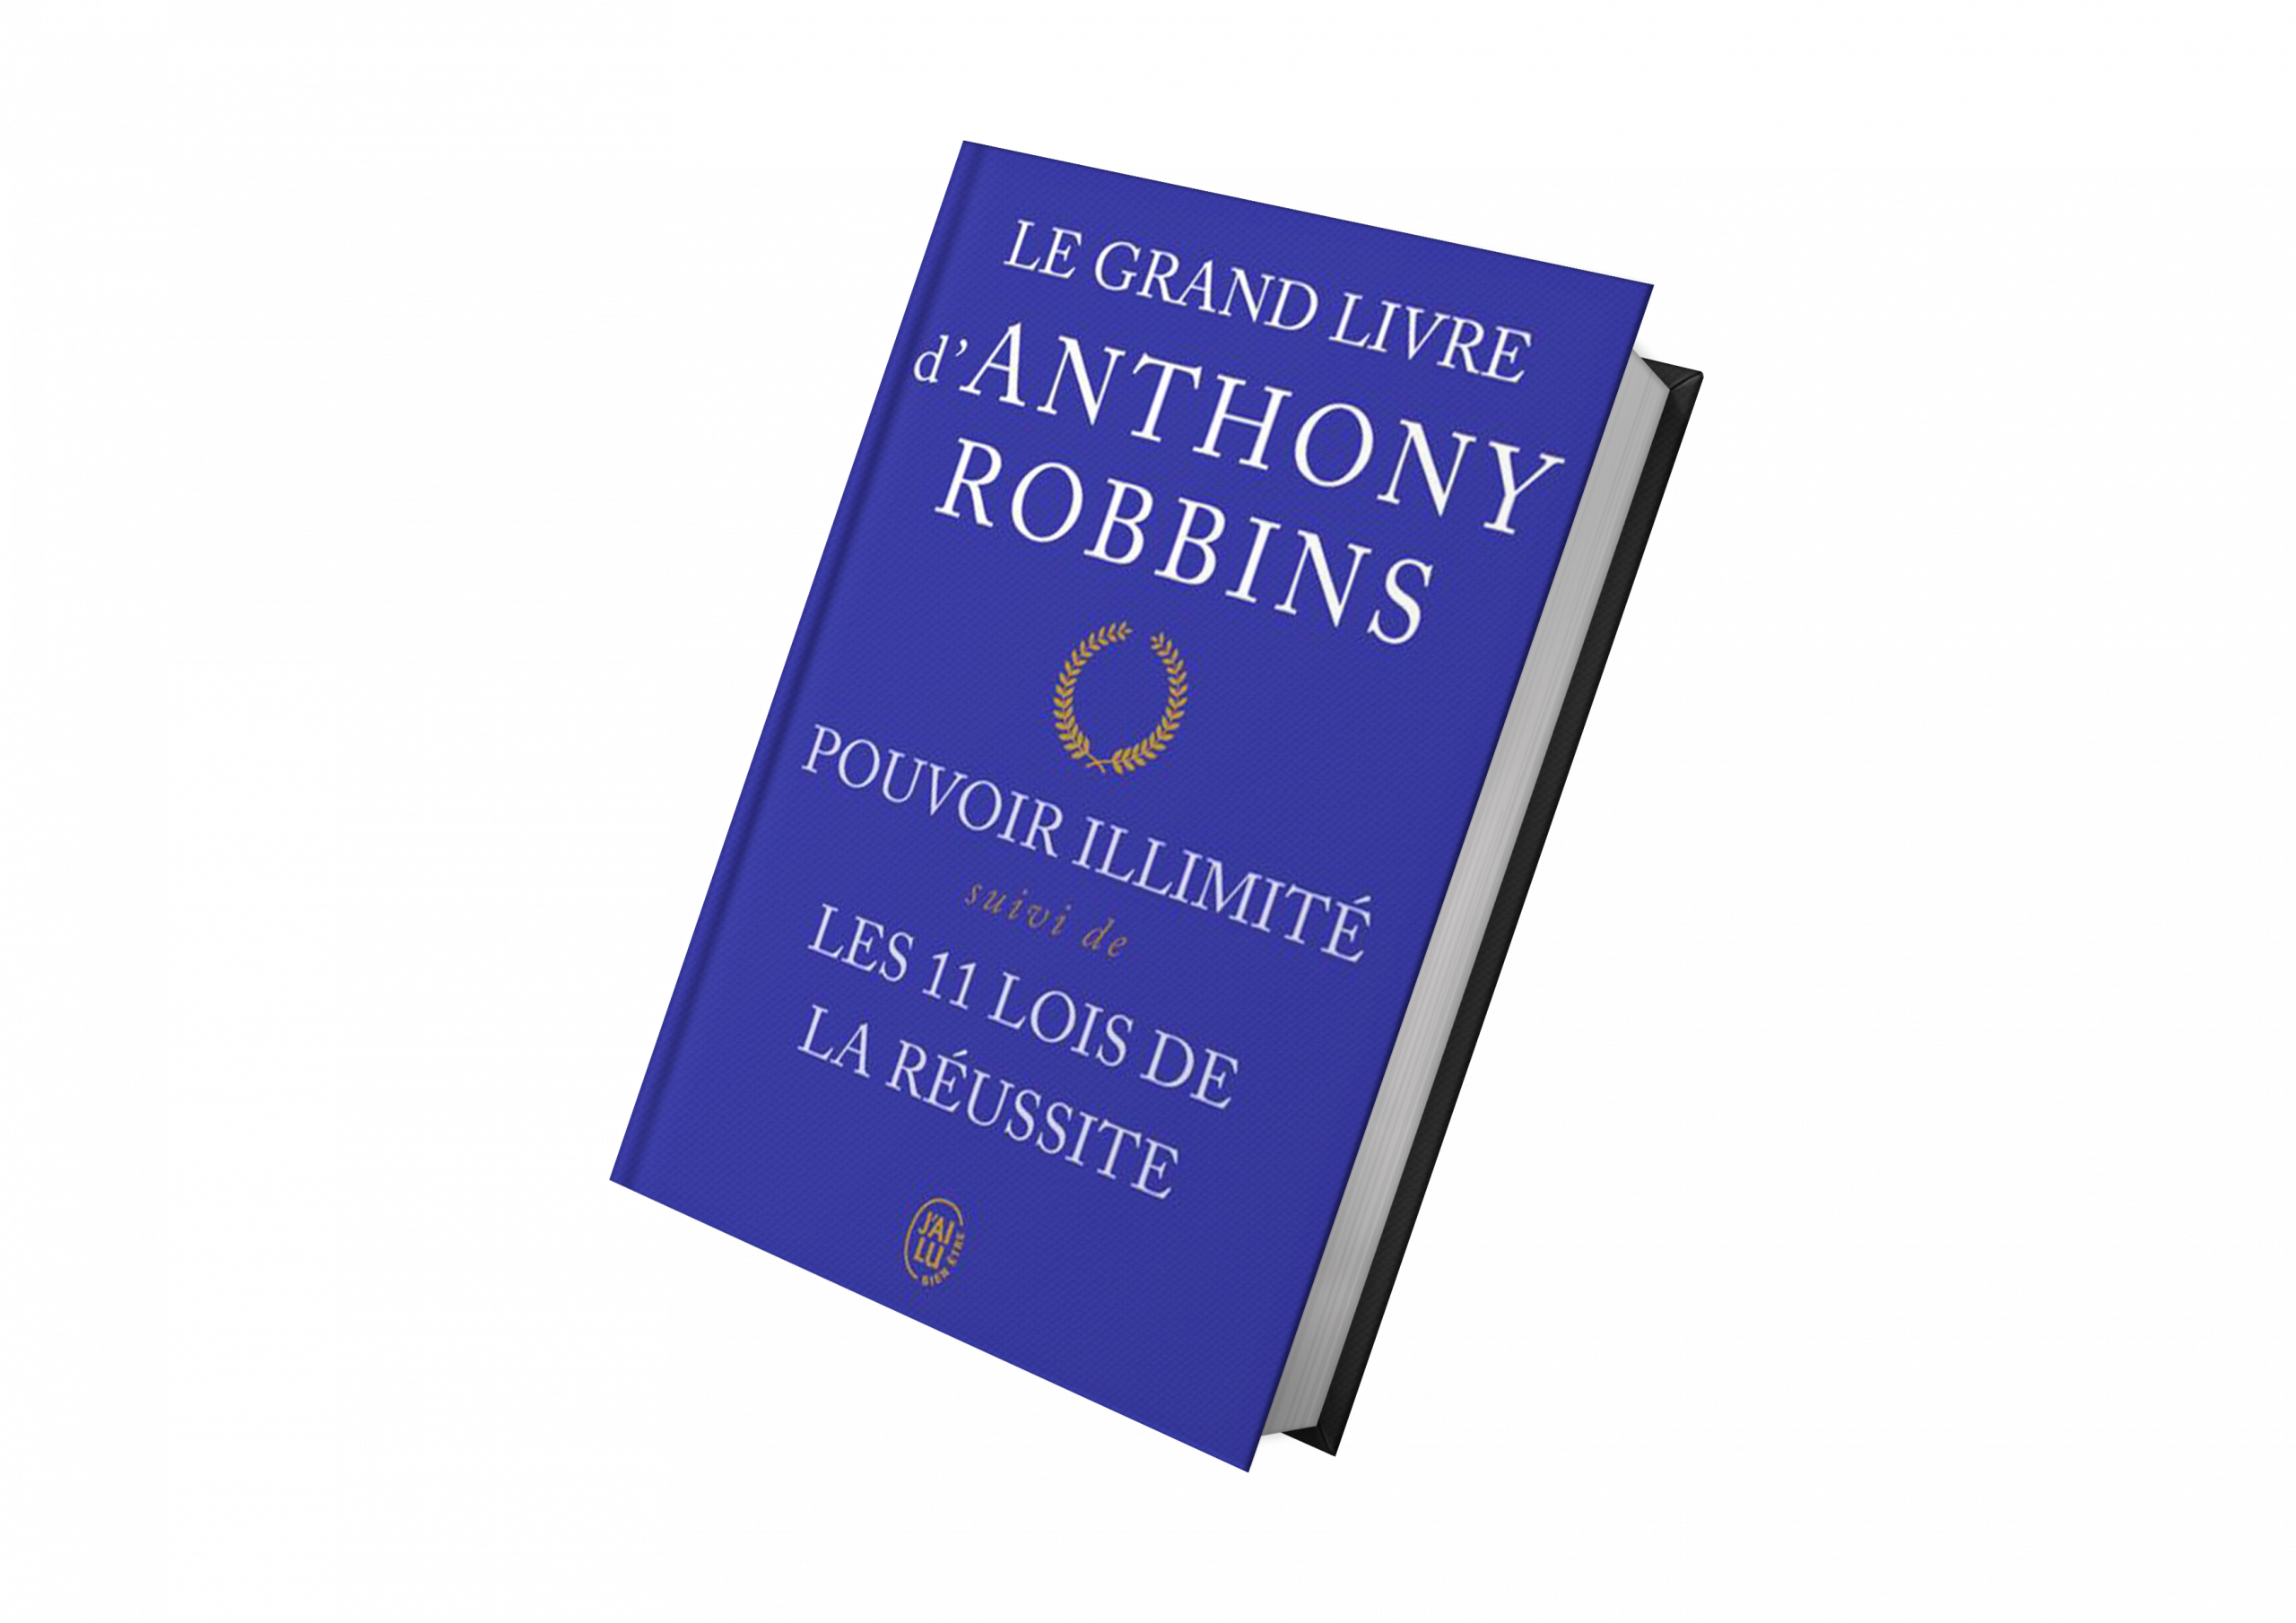 Anthony Robbins Pouvoir illimité